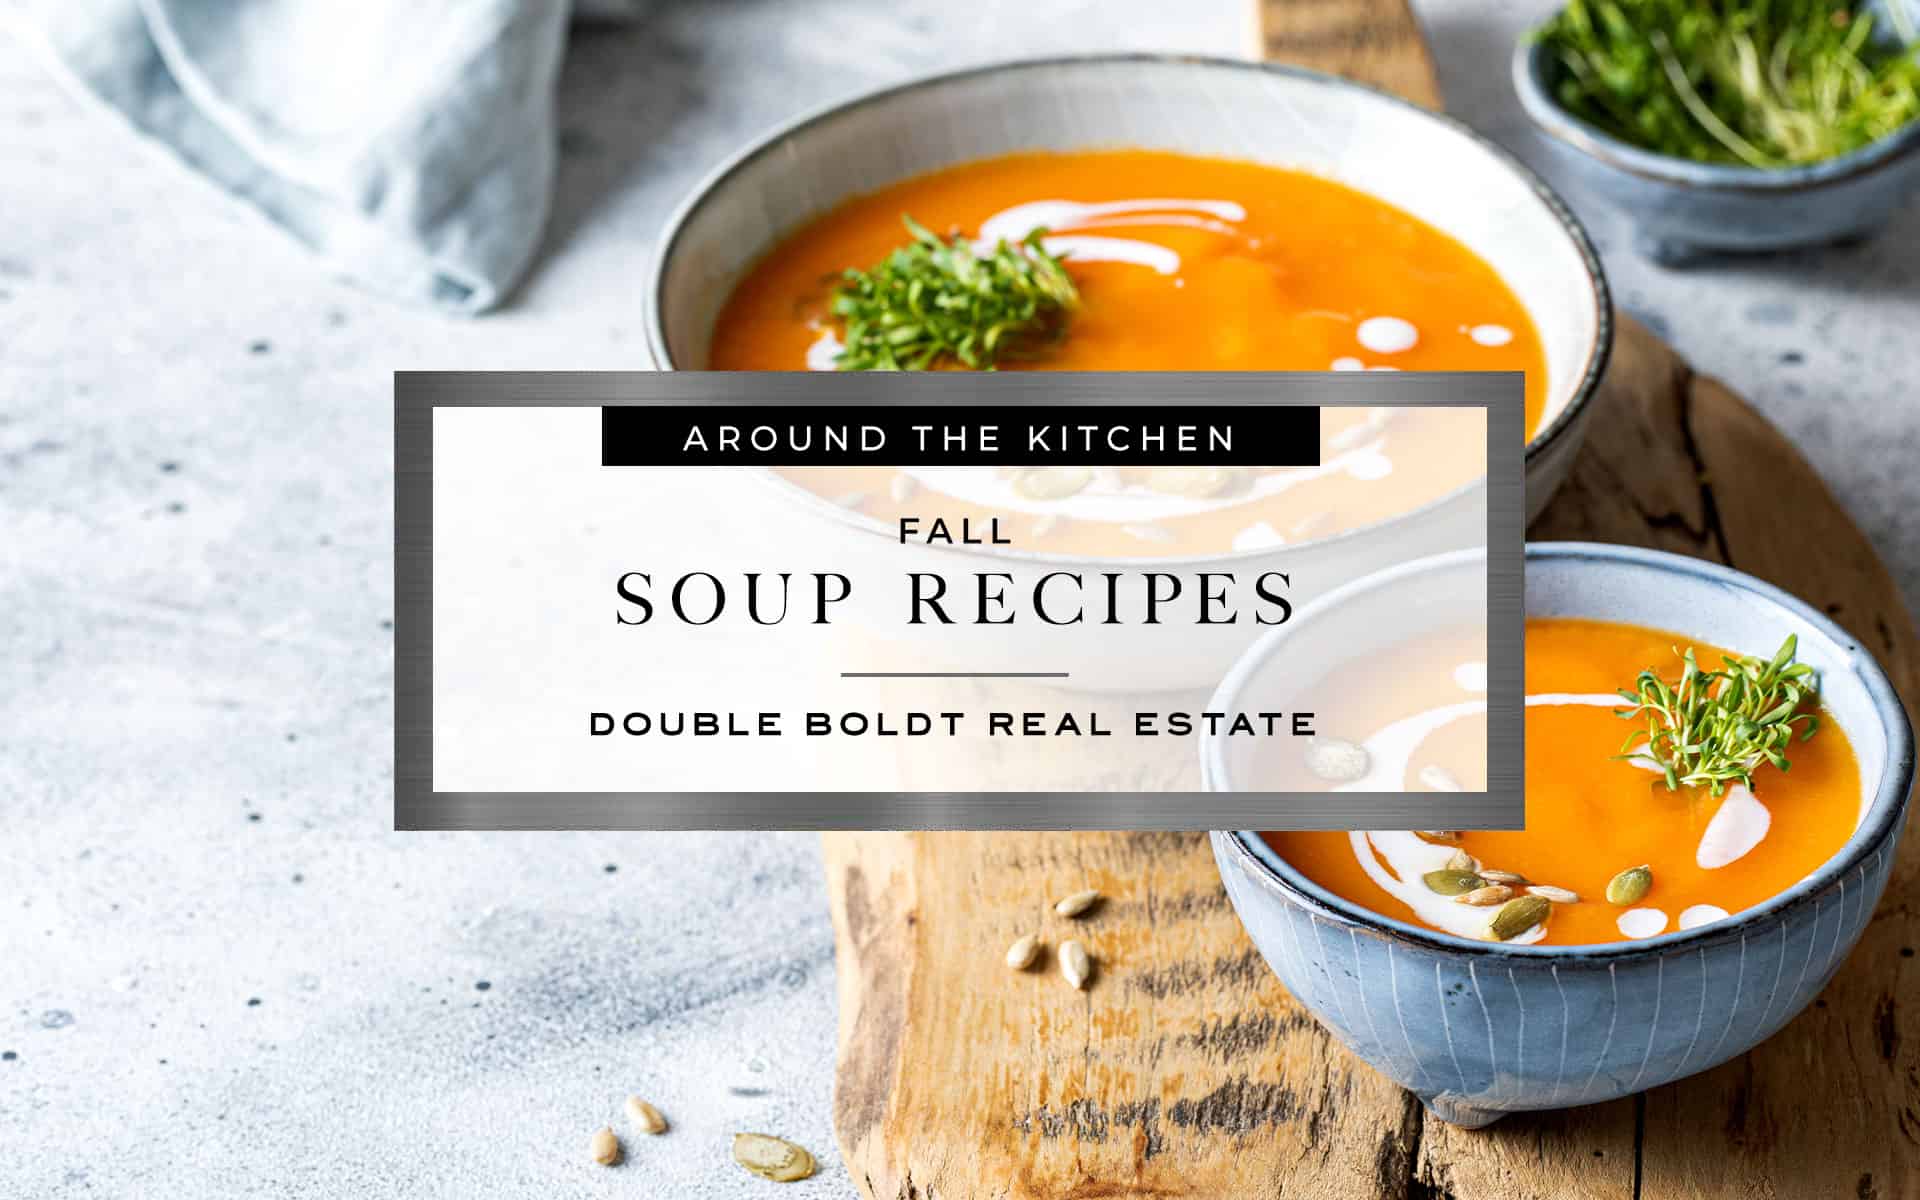 Fall Soup Recipes